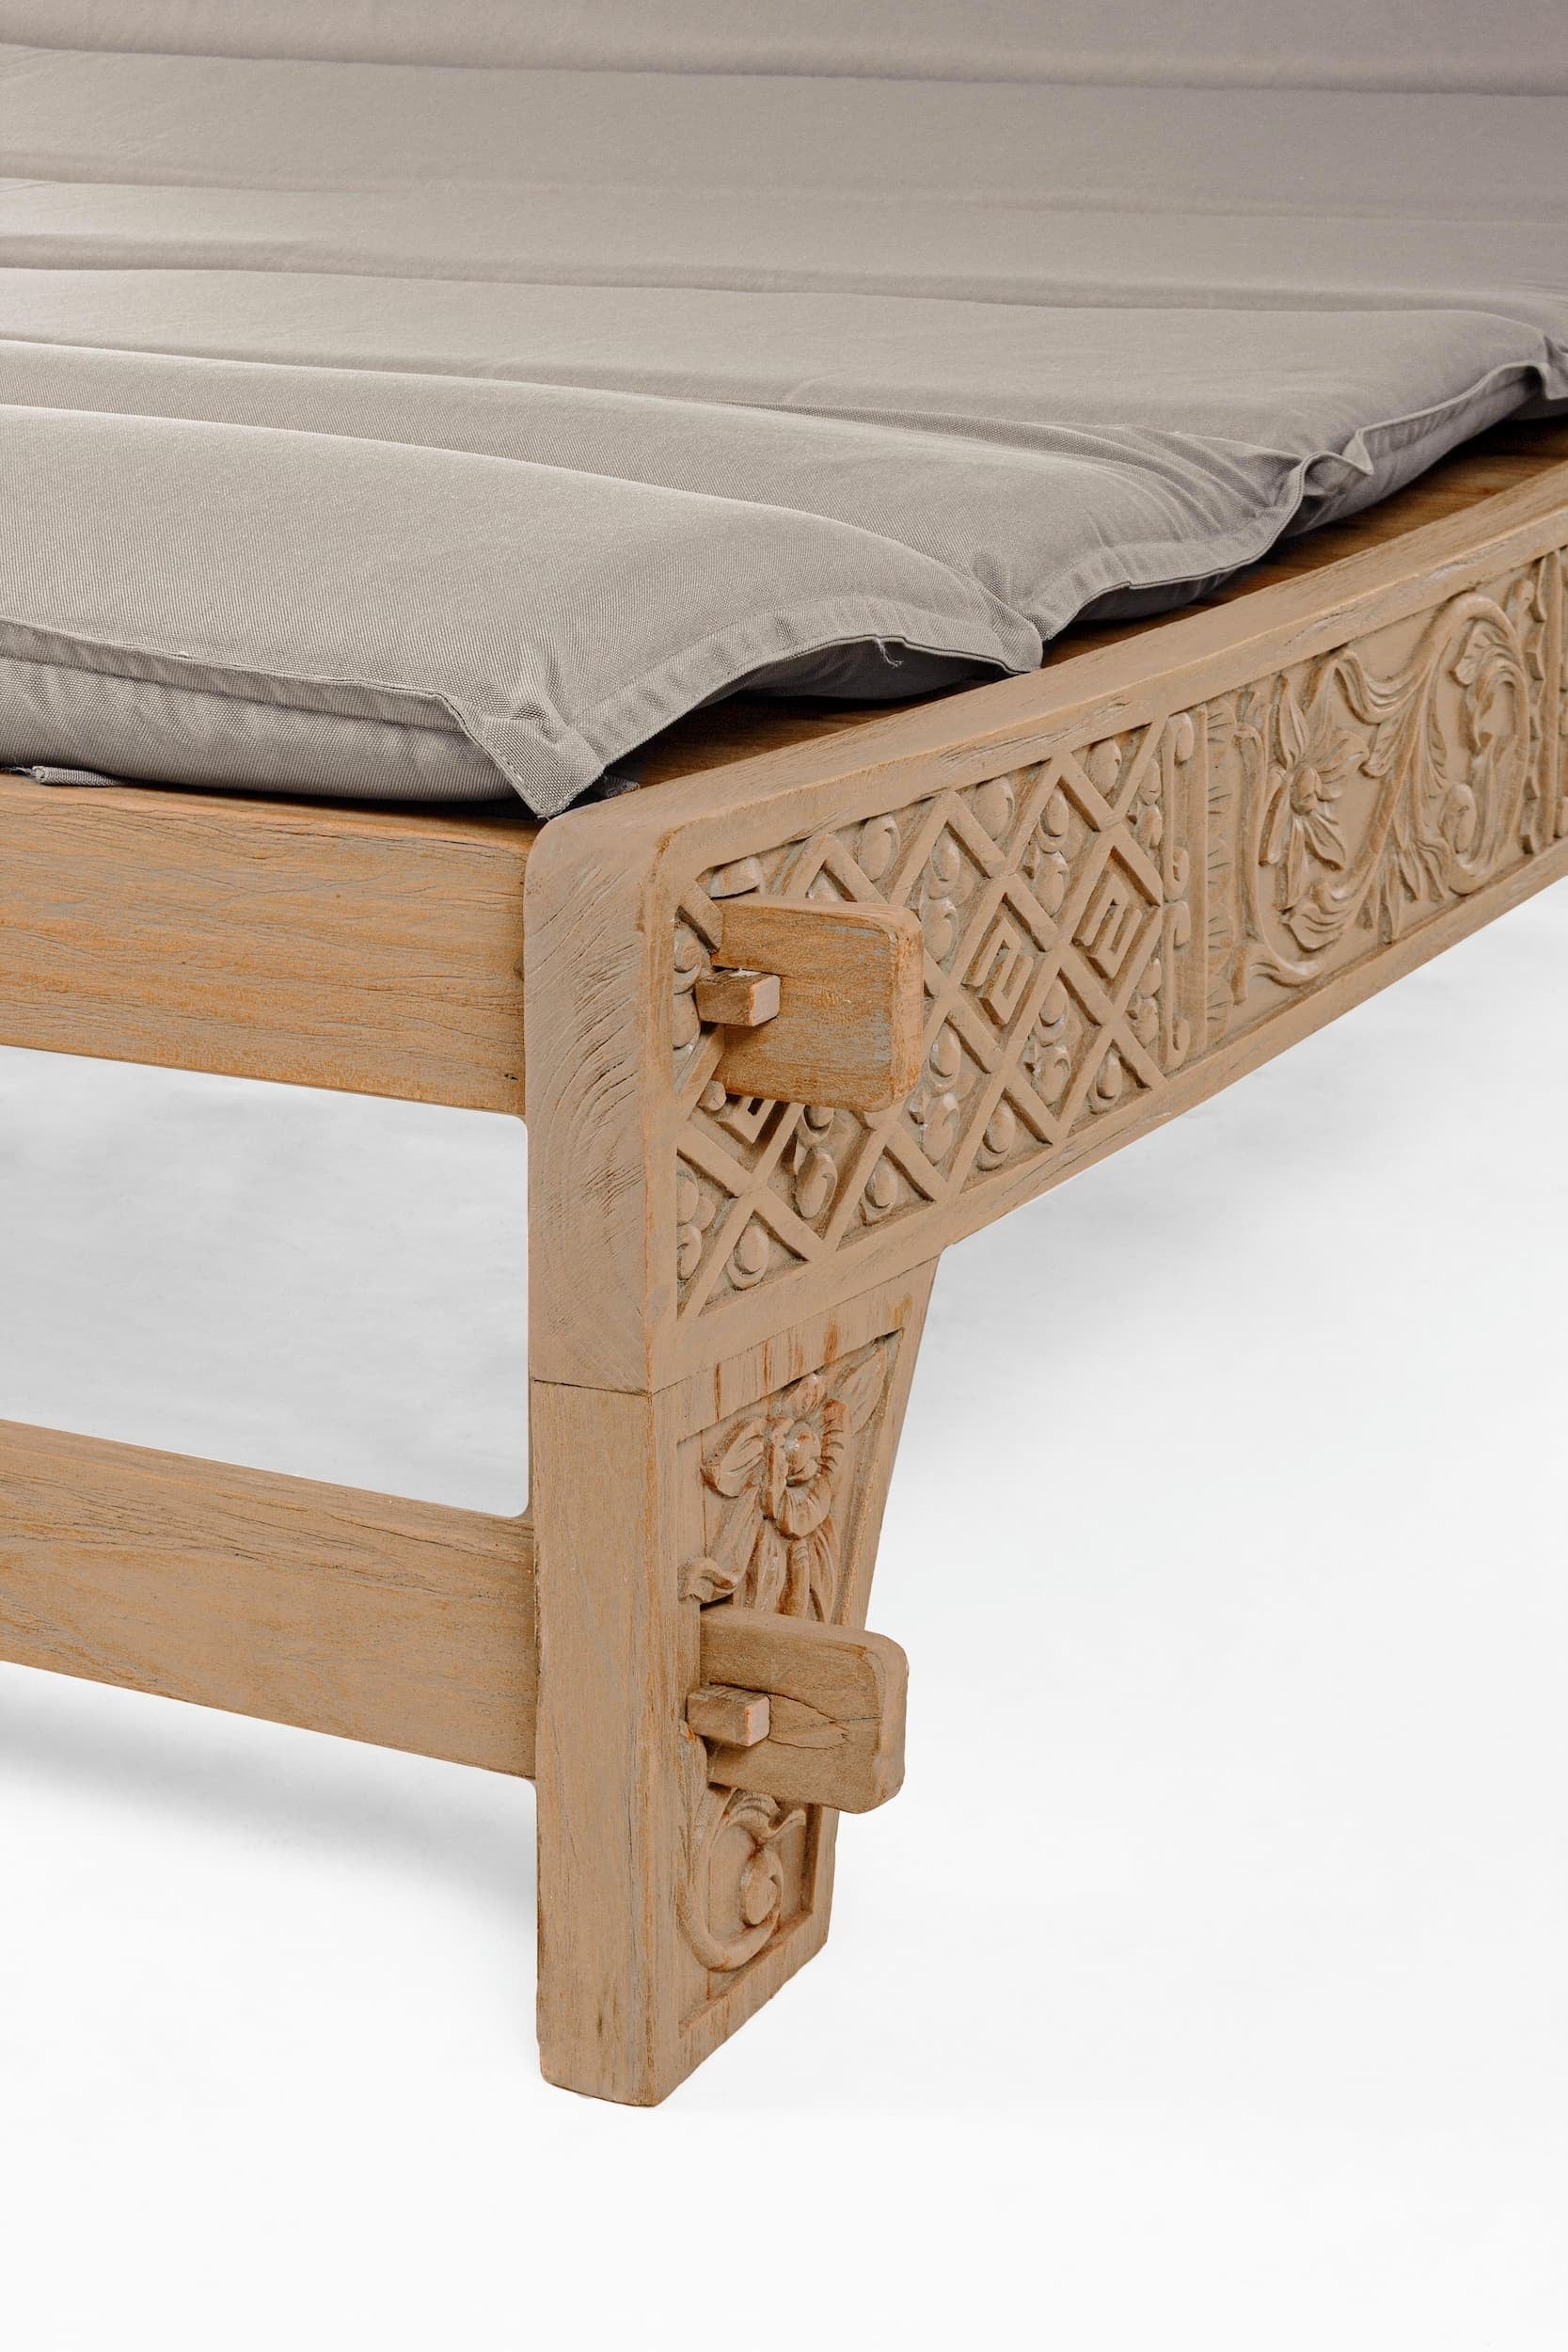 Sezlong pentru gradina / terasa, din lemn de tec si material textil, Sanur Grej / Natural, l140-150xA224xH91 cm (10)